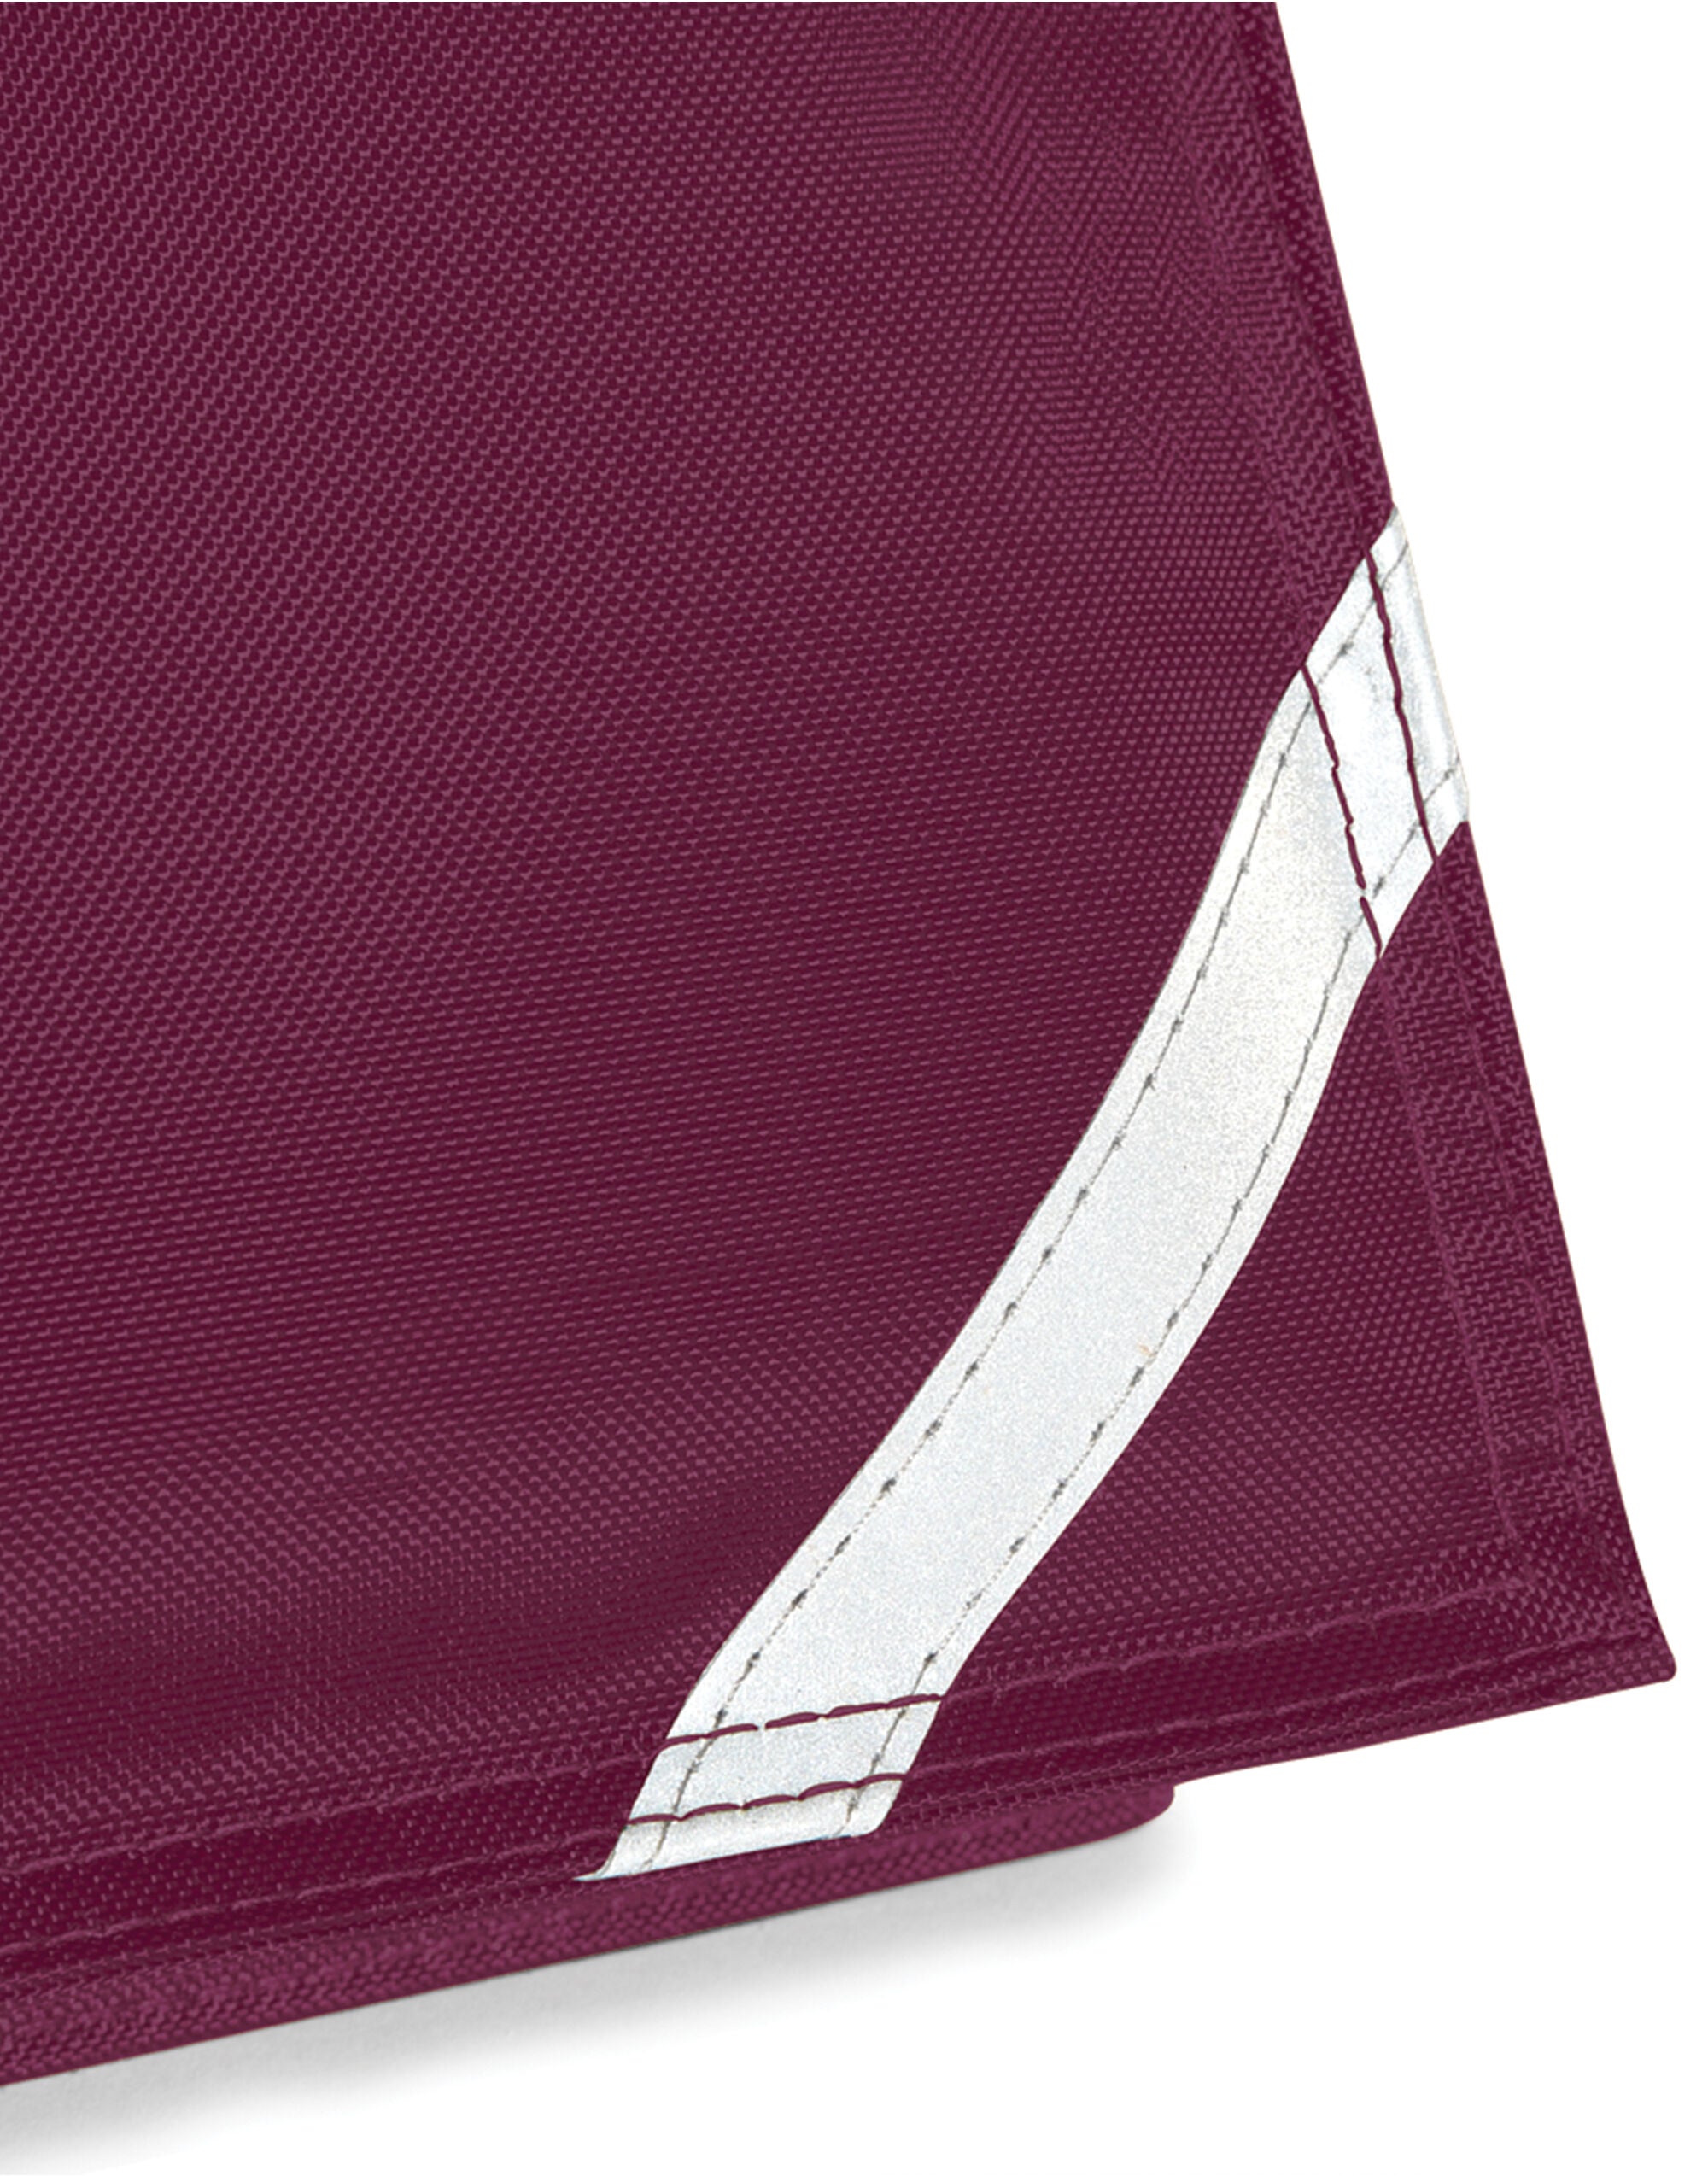 Quadra Junior Book Bag With Strap Detachable adjustable shoulder (QD457)